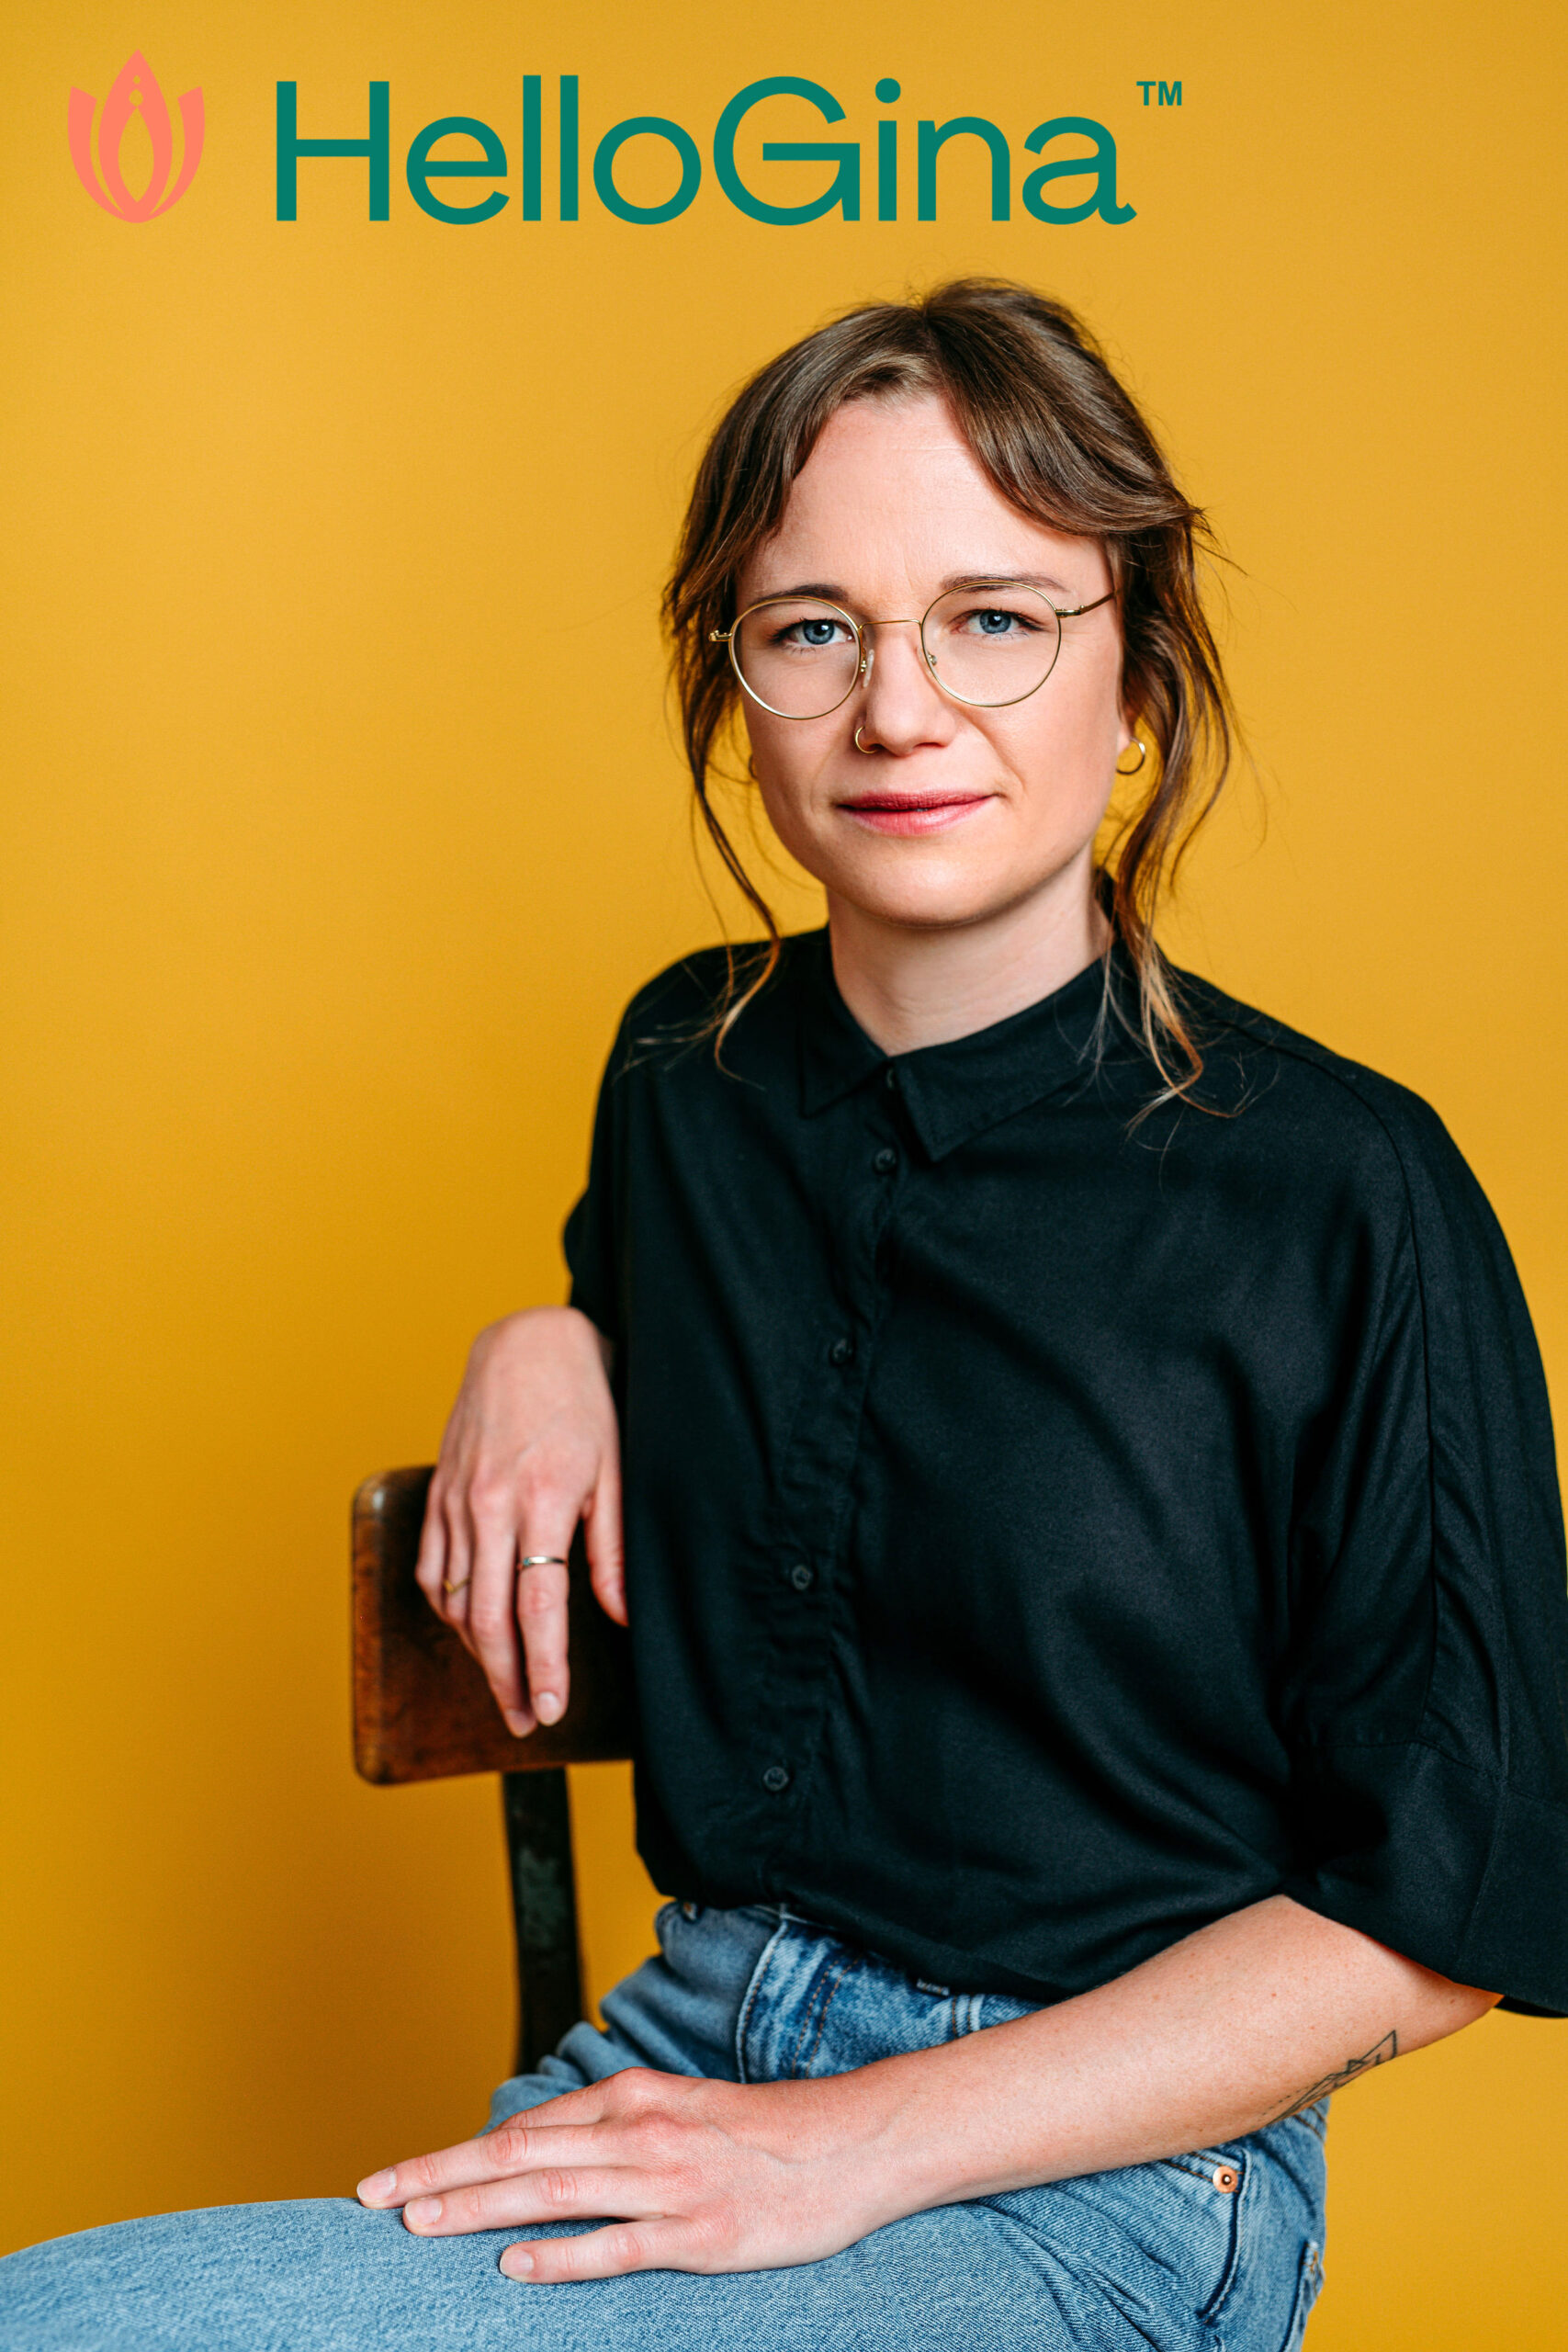 Charlotte Kirchhoff, co-developer of HelloGina